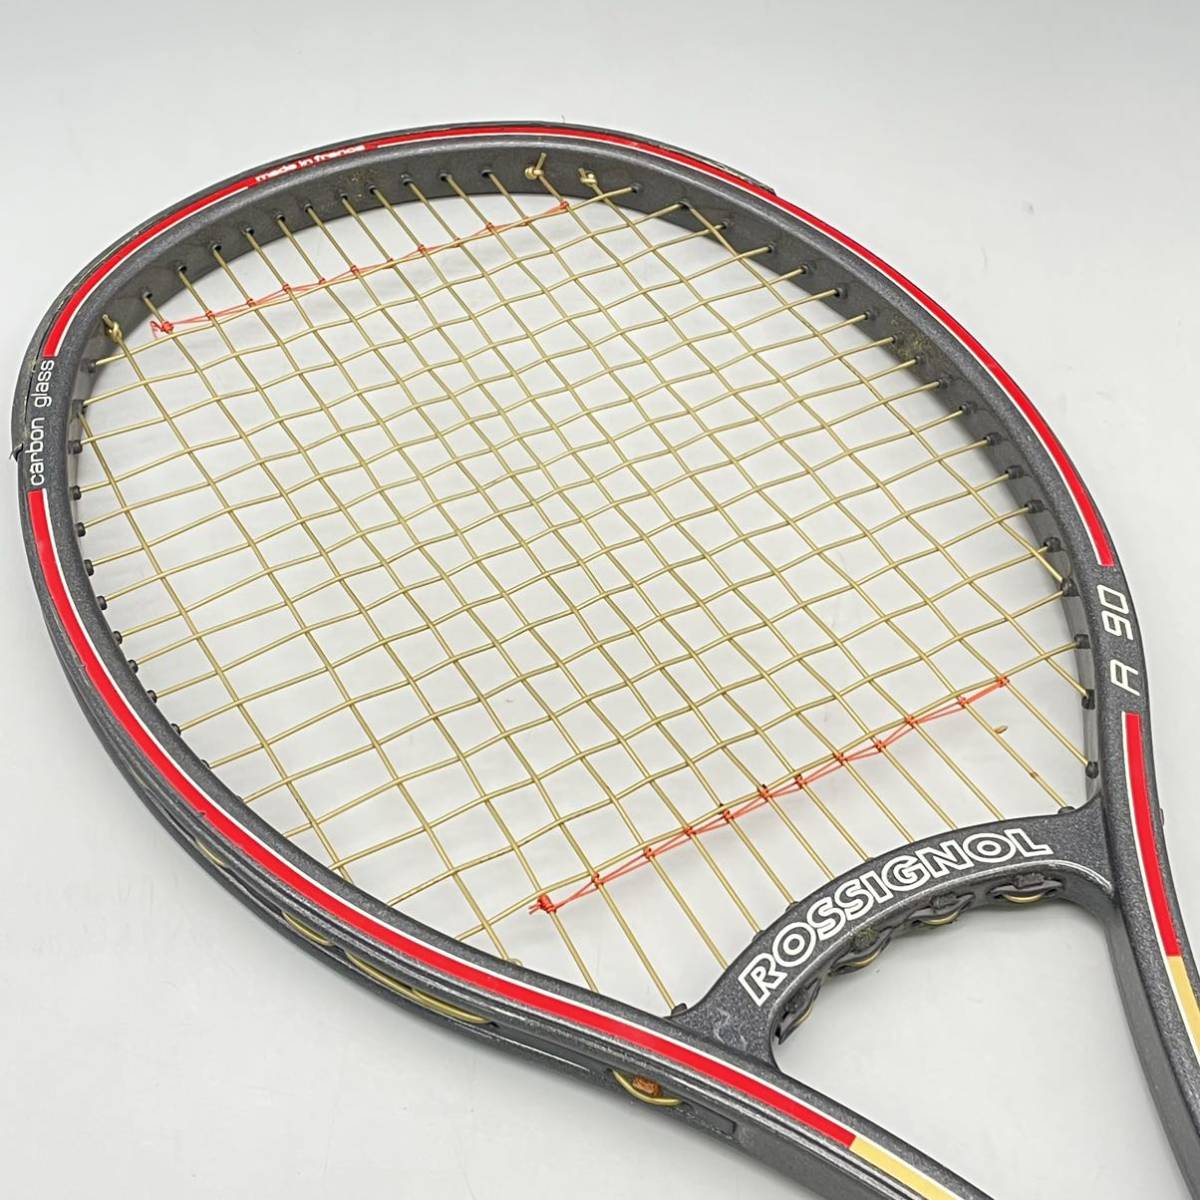 ROSSIGNOL ロシニョール R 90 硬式 テニス ラケット carbon glass カーボン tennis racket 黒 ブラック スポーツ France フランス製 レア_画像5